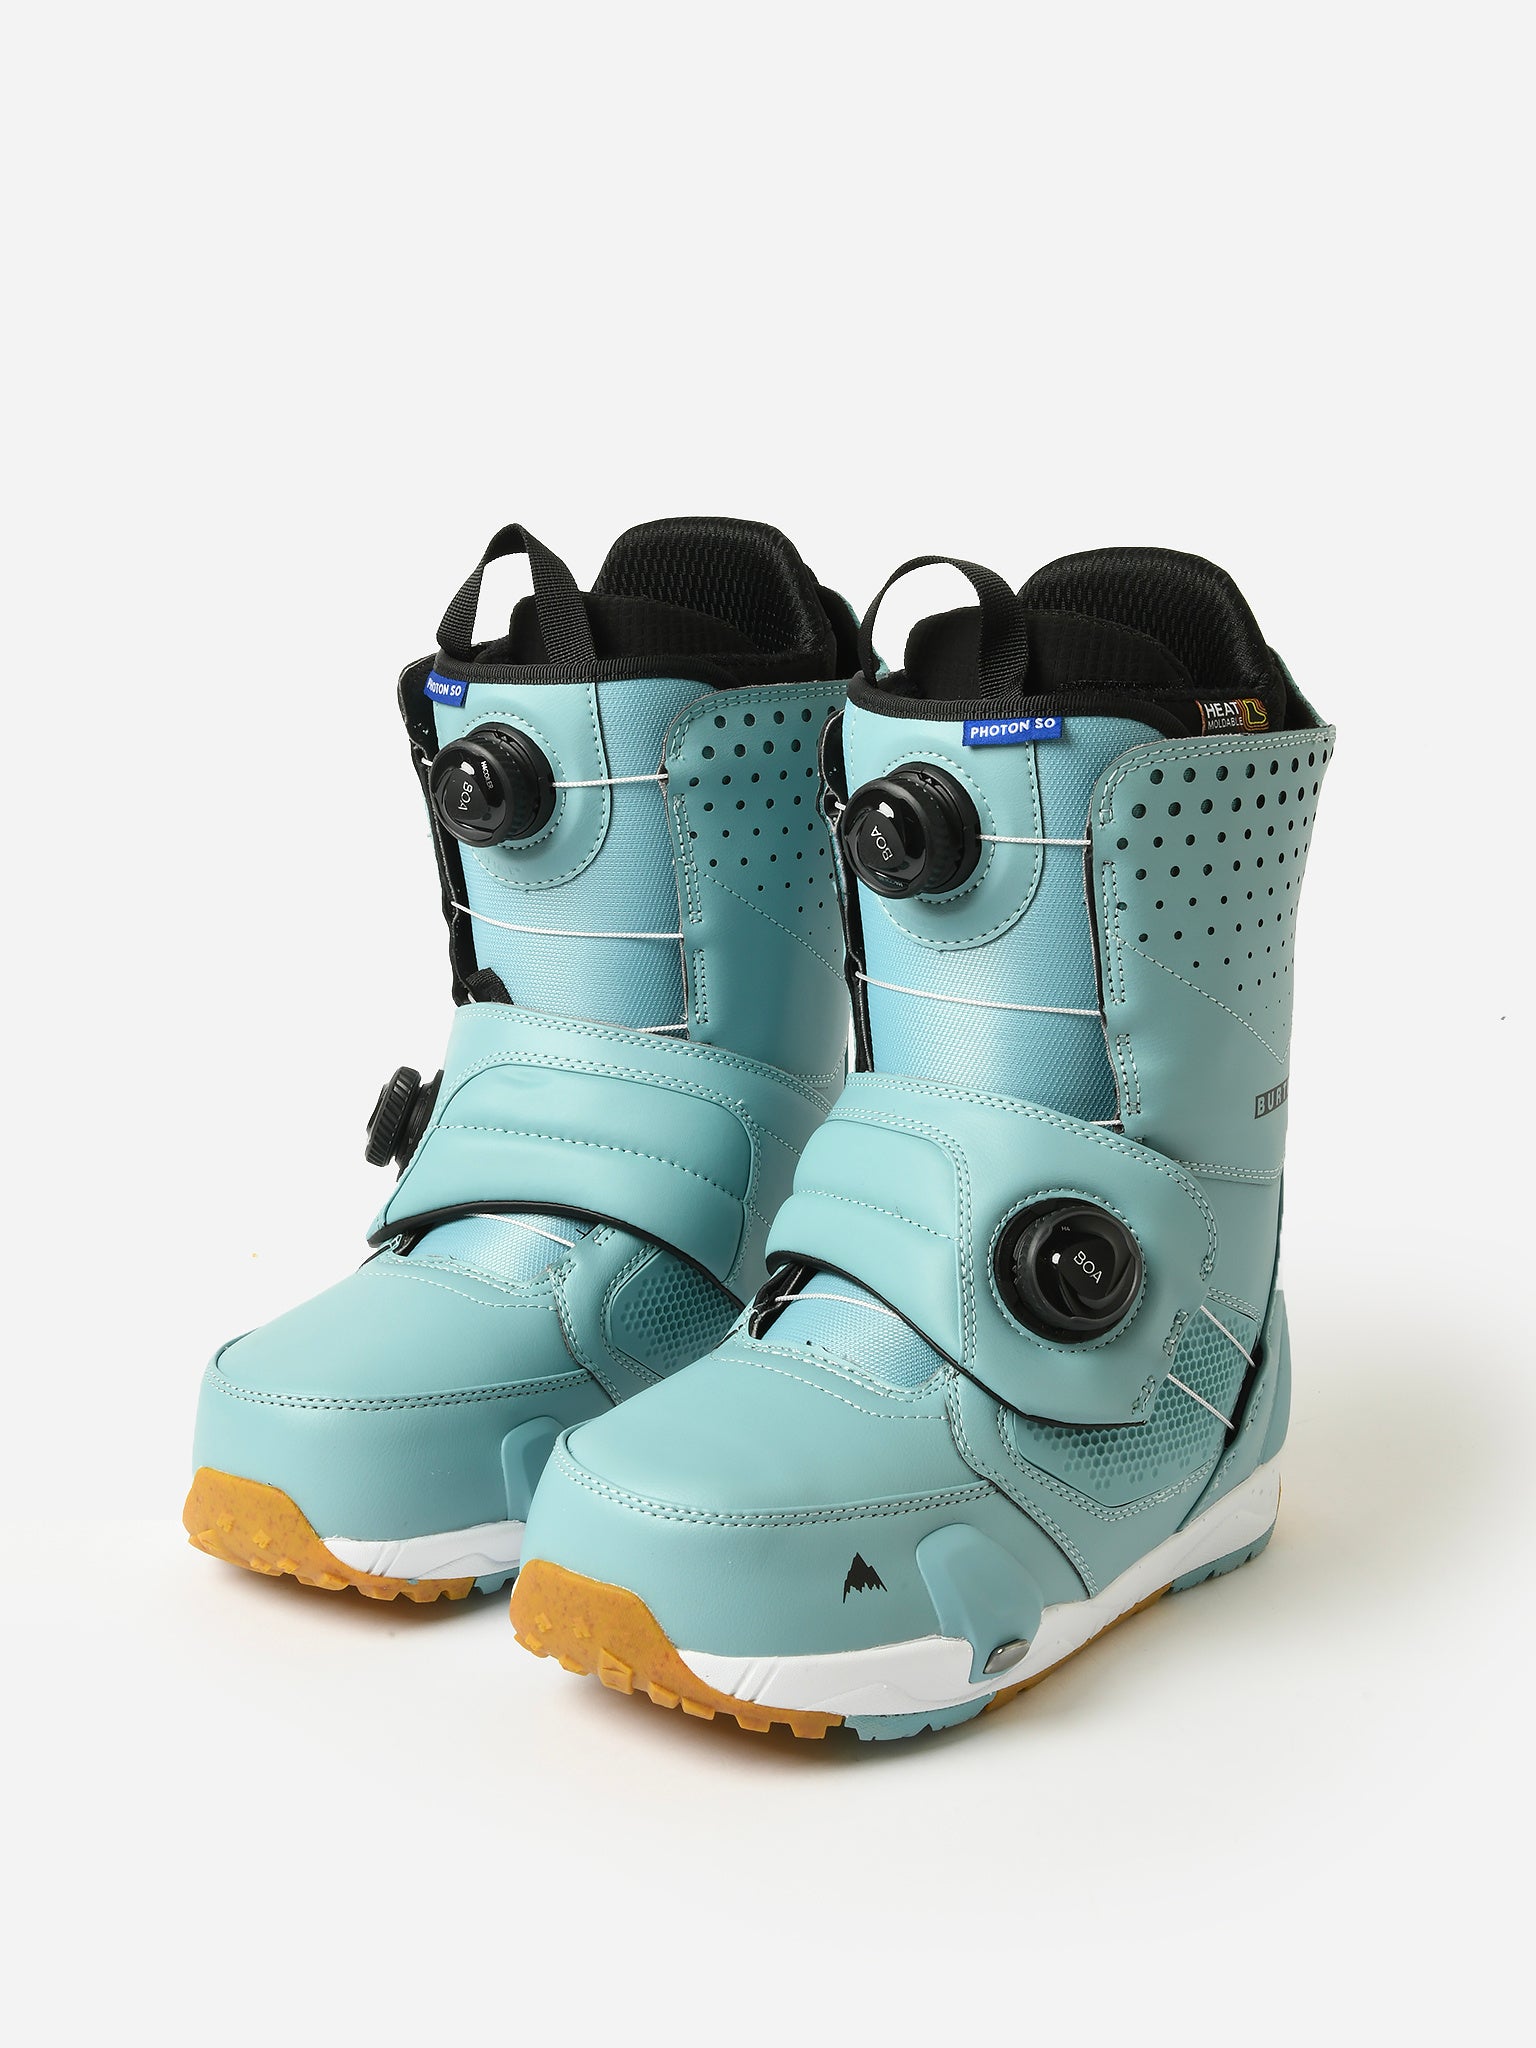 Boots de snowboard Photon homme